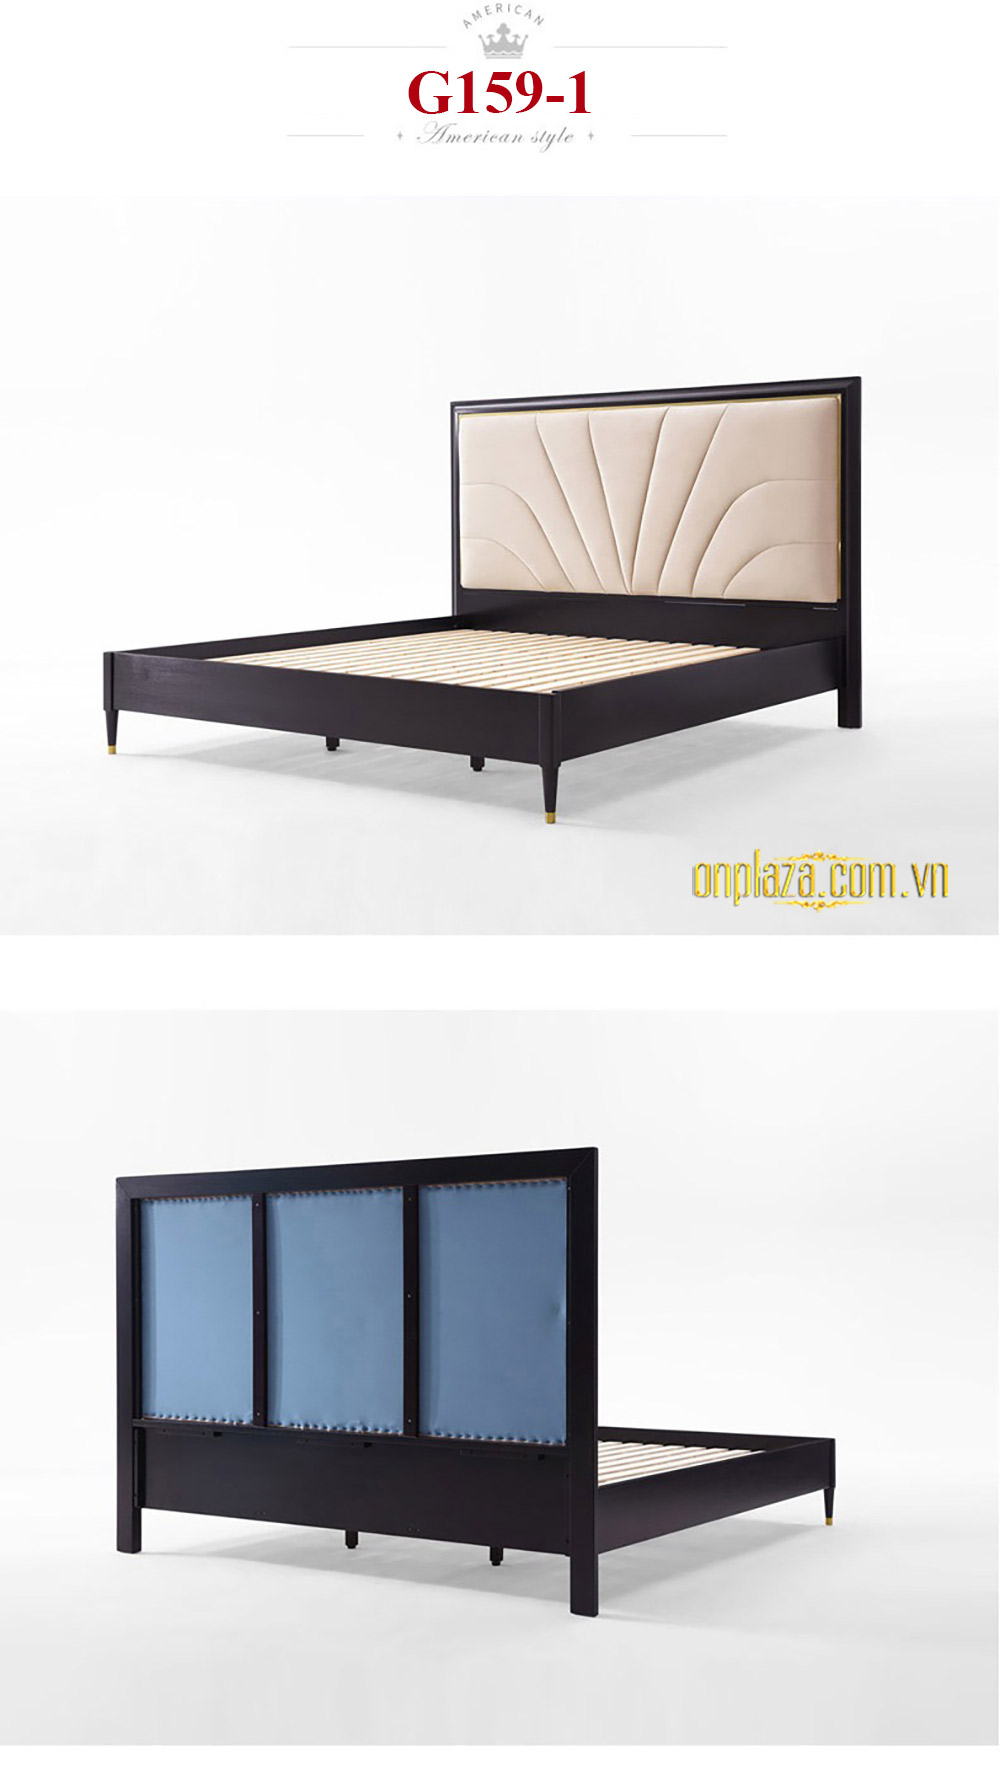 Bộ giường gỗ tự nhiên phối nhung sang trọng phong cách Mỹ hiện đại G159